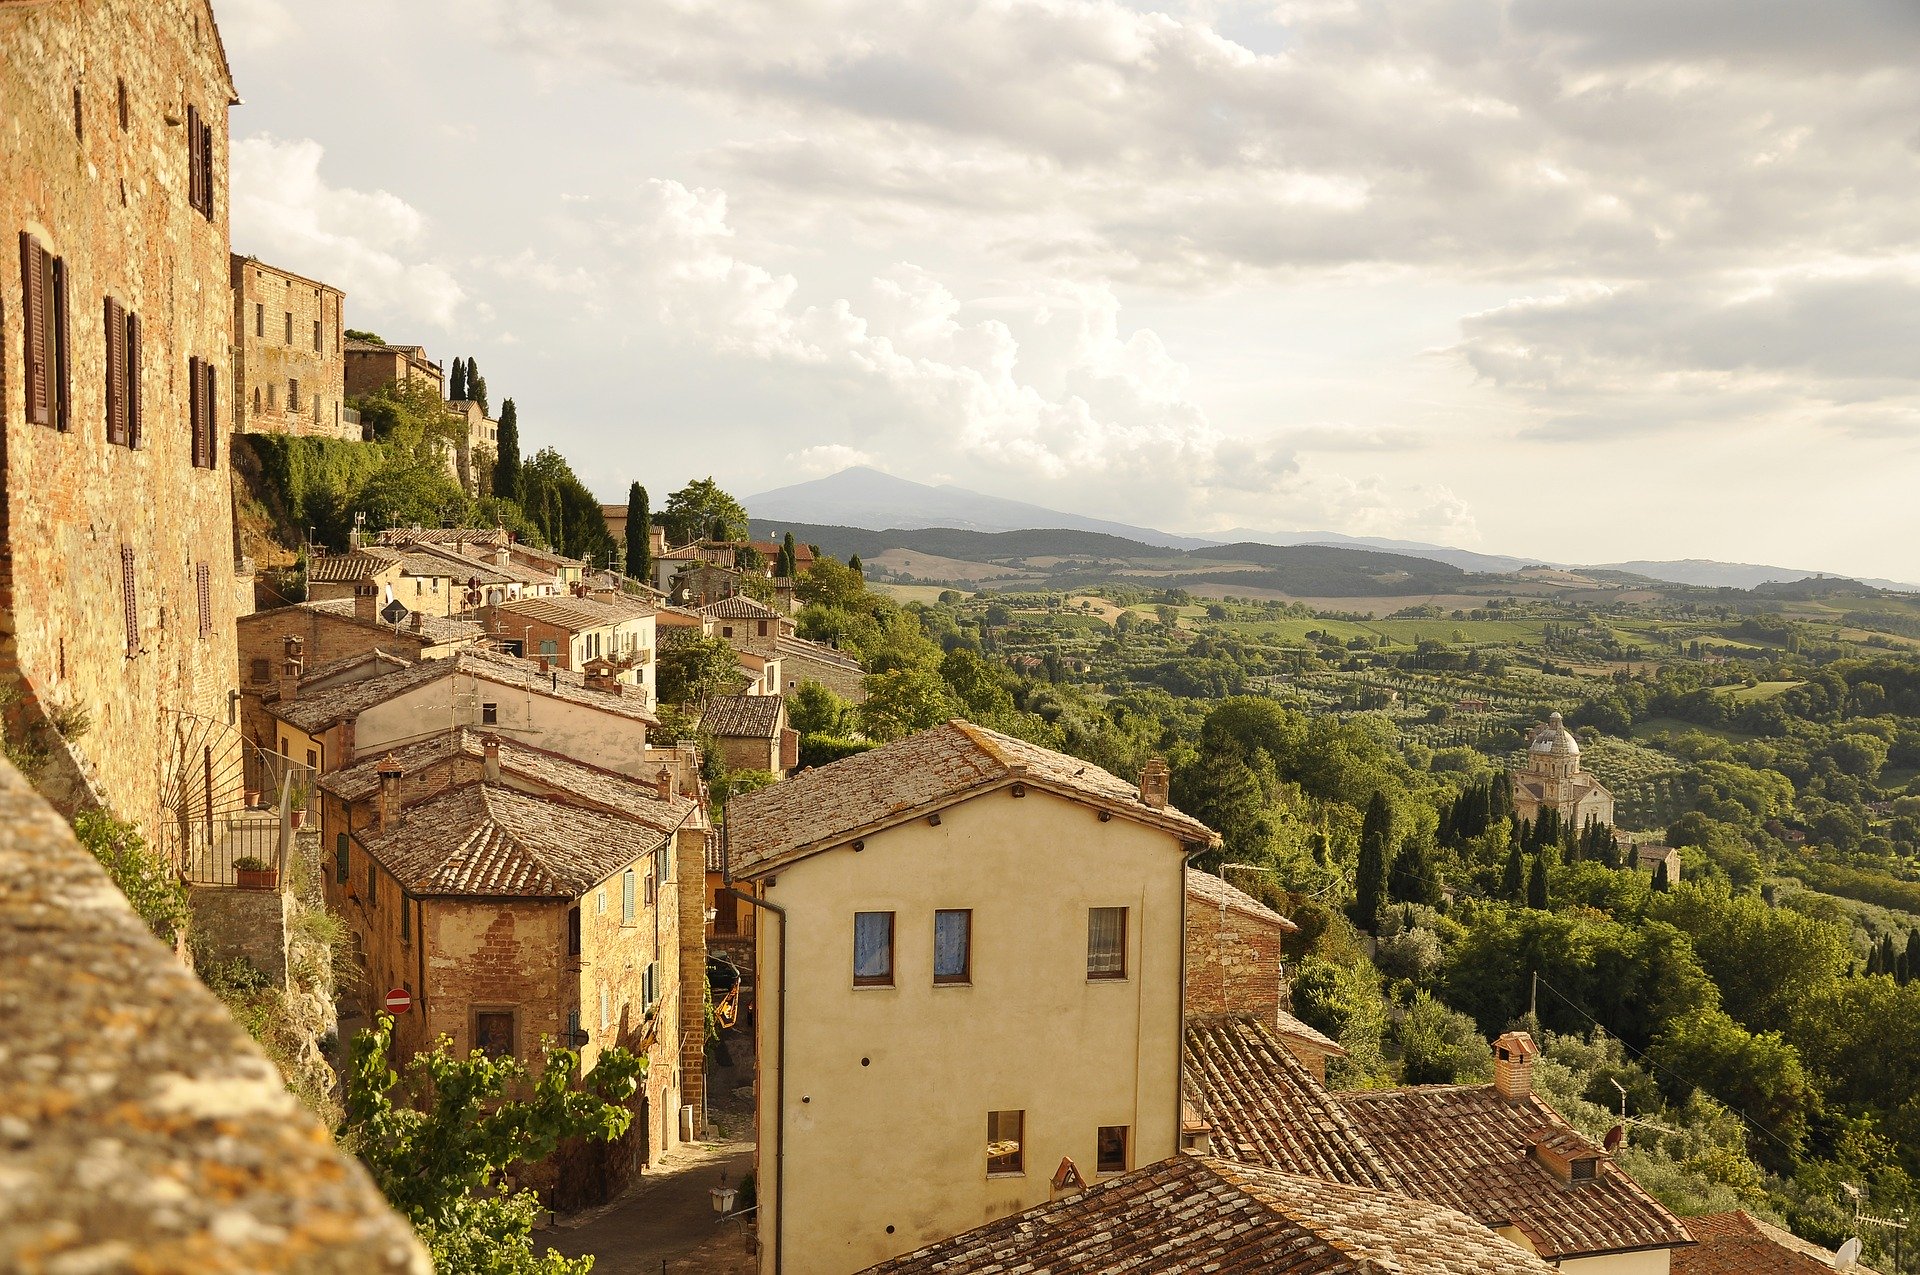 Italien abseits der großen Touristenströme: Vielfalt pur auf kleiner Fläche